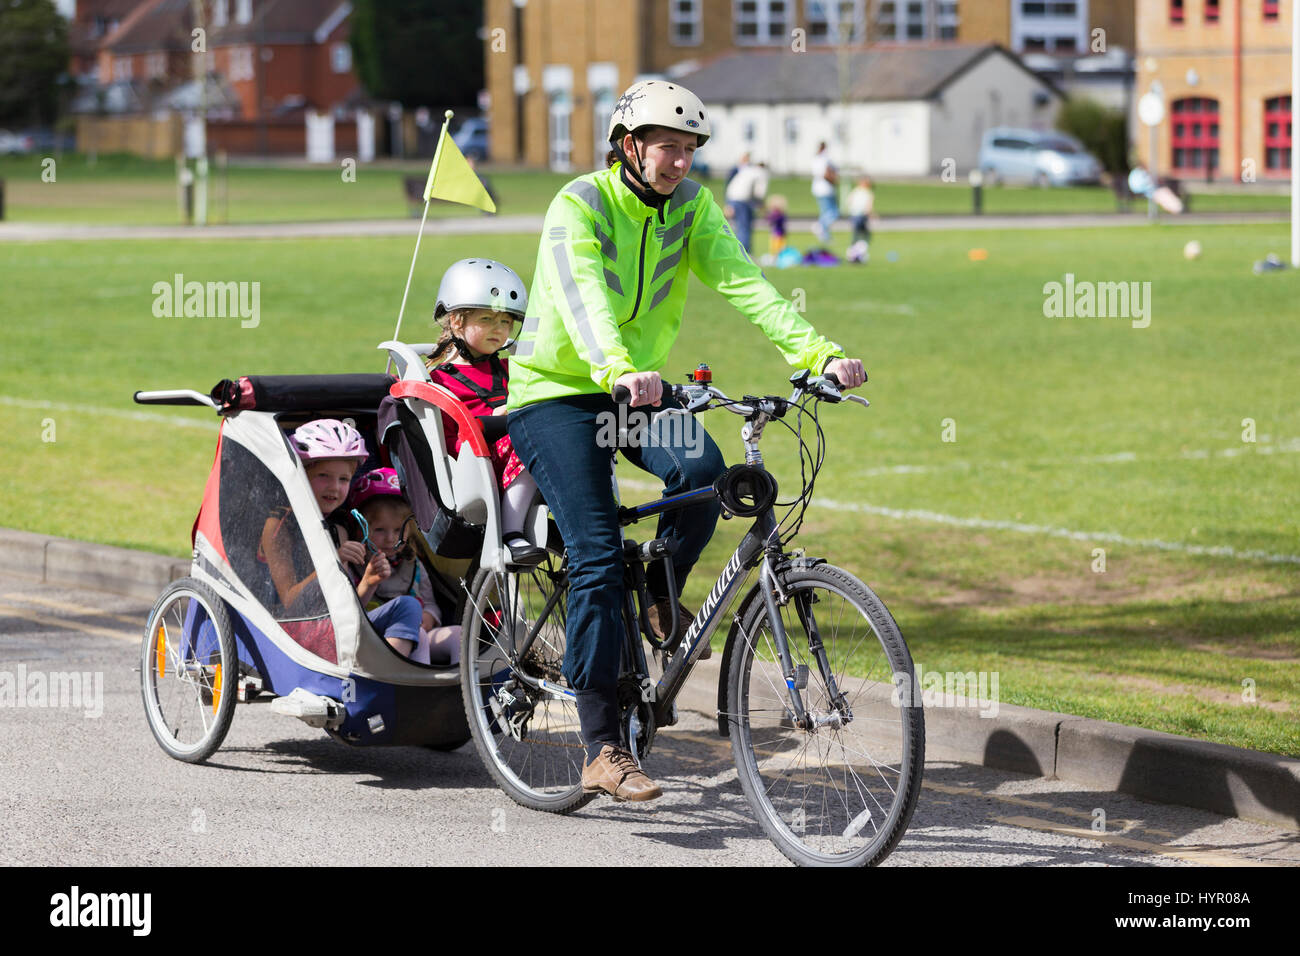 Donna ciclista sulla bicicletta / bicicletta con + 3 bambini; Co pilota sedile bambino con caschetto e ciclo di traino rimorchio Chariot con due / 2 ragazzi con i caschi. Regno Unito. Foto Stock